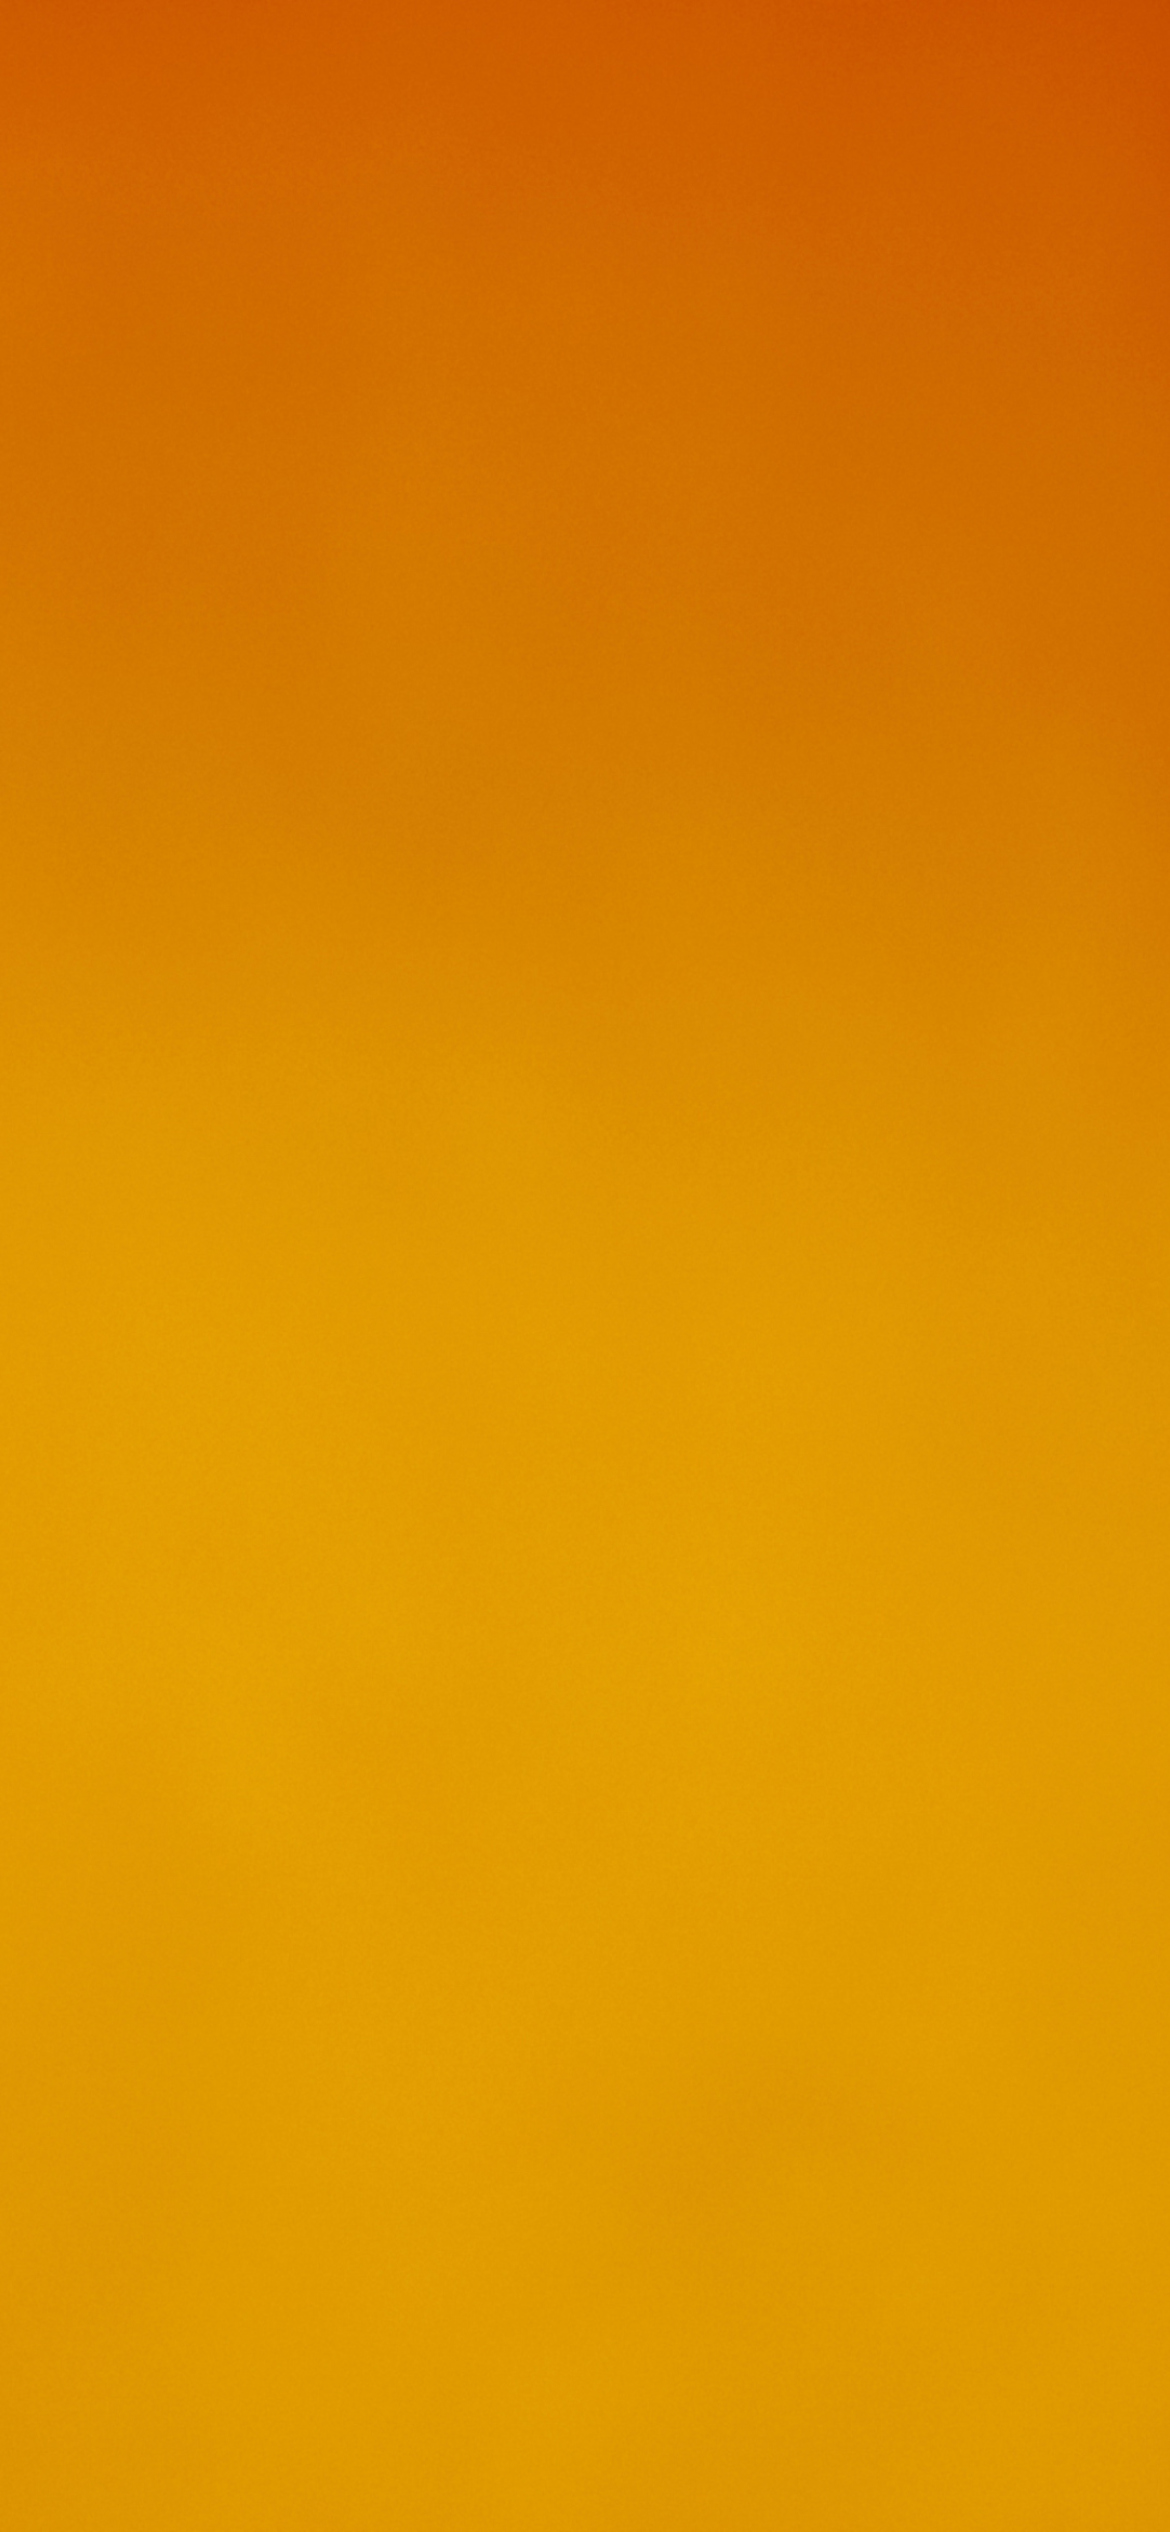 Orange Background wallpaper 1170x2532